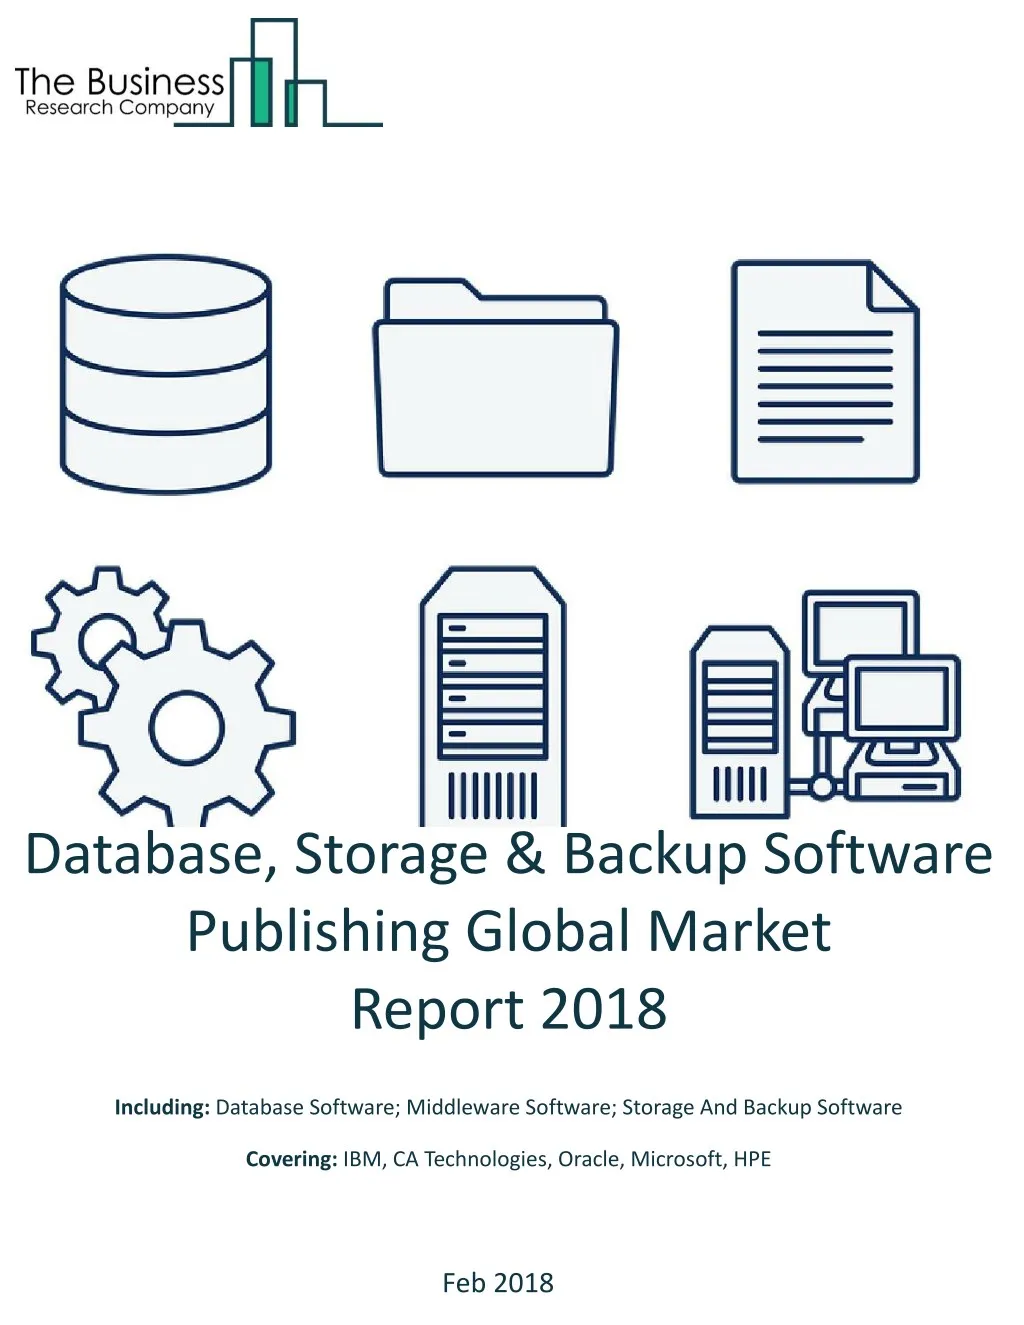 database storage backup software publishing